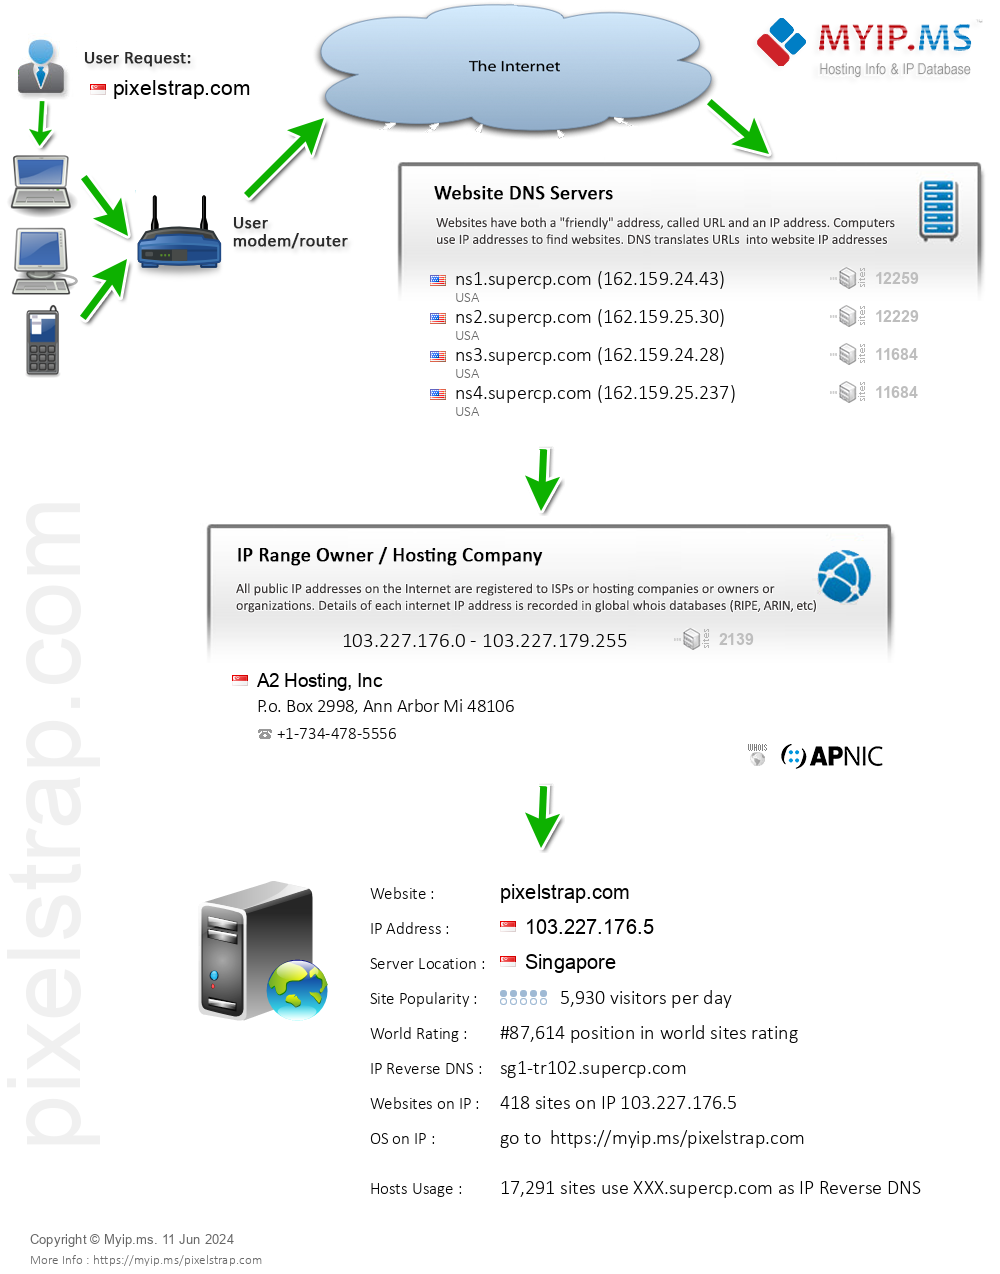 Pixelstrap.com - Website Hosting Visual IP Diagram